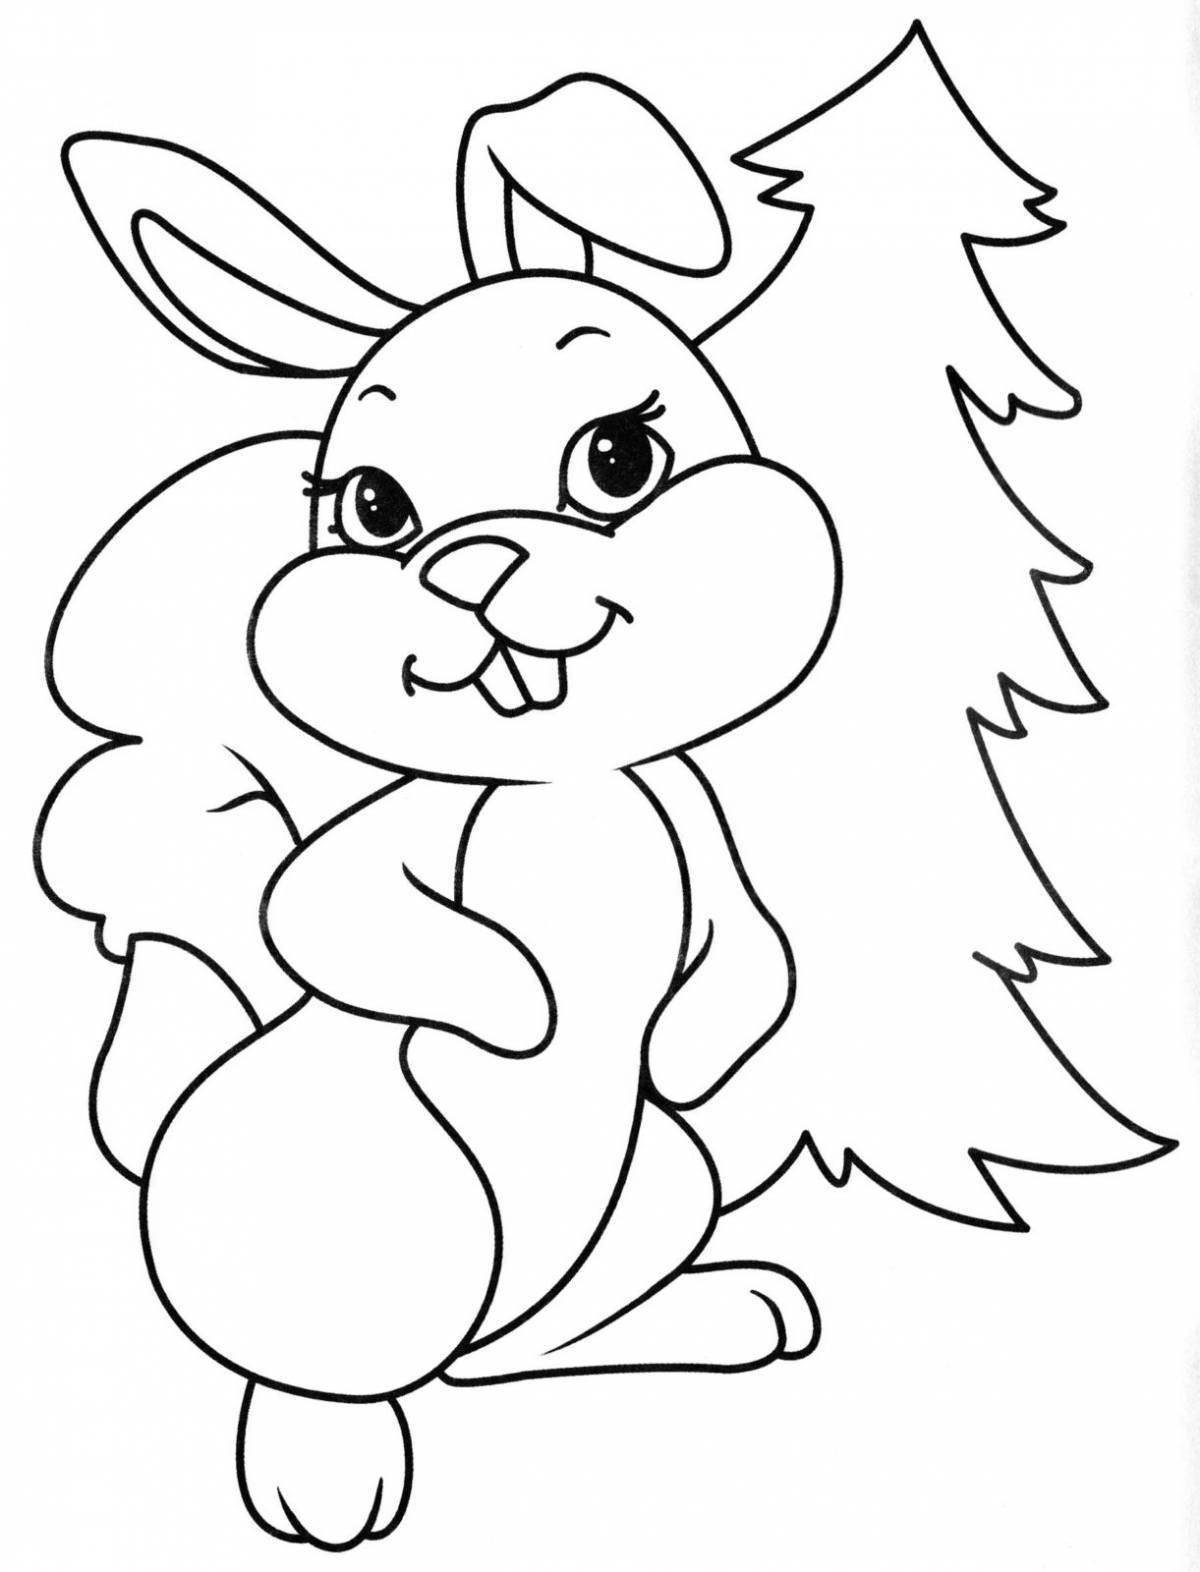 Гламурная раскраска кролик для детей 2-3 лет